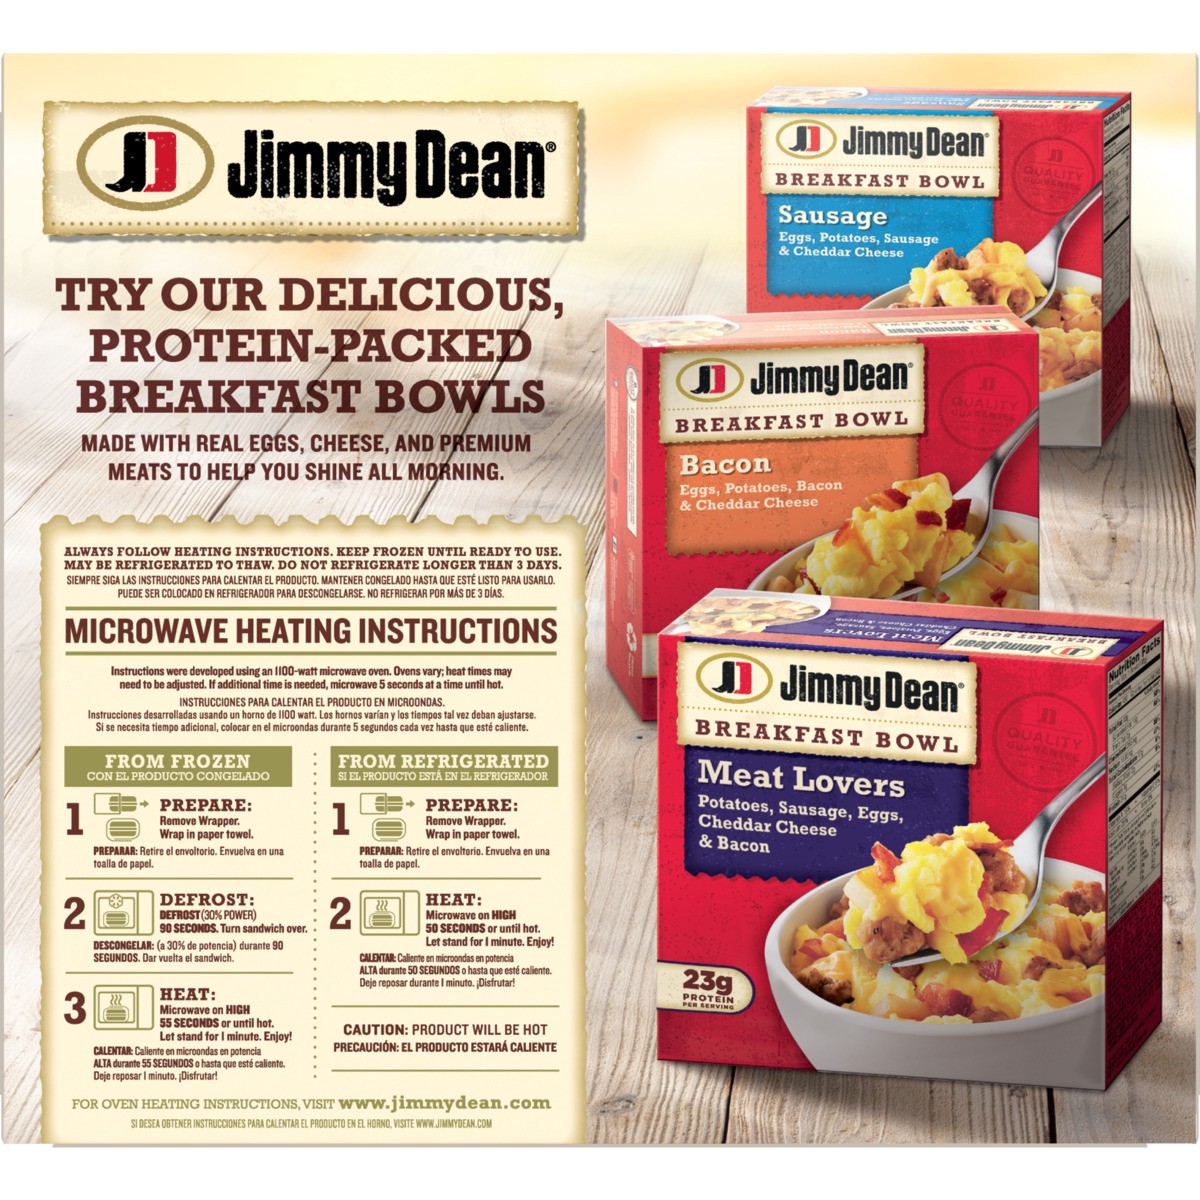 slide 5 of 9, Jimmy Dean Jmmy Dean Saus Egg Chse Bisc, 36 oz